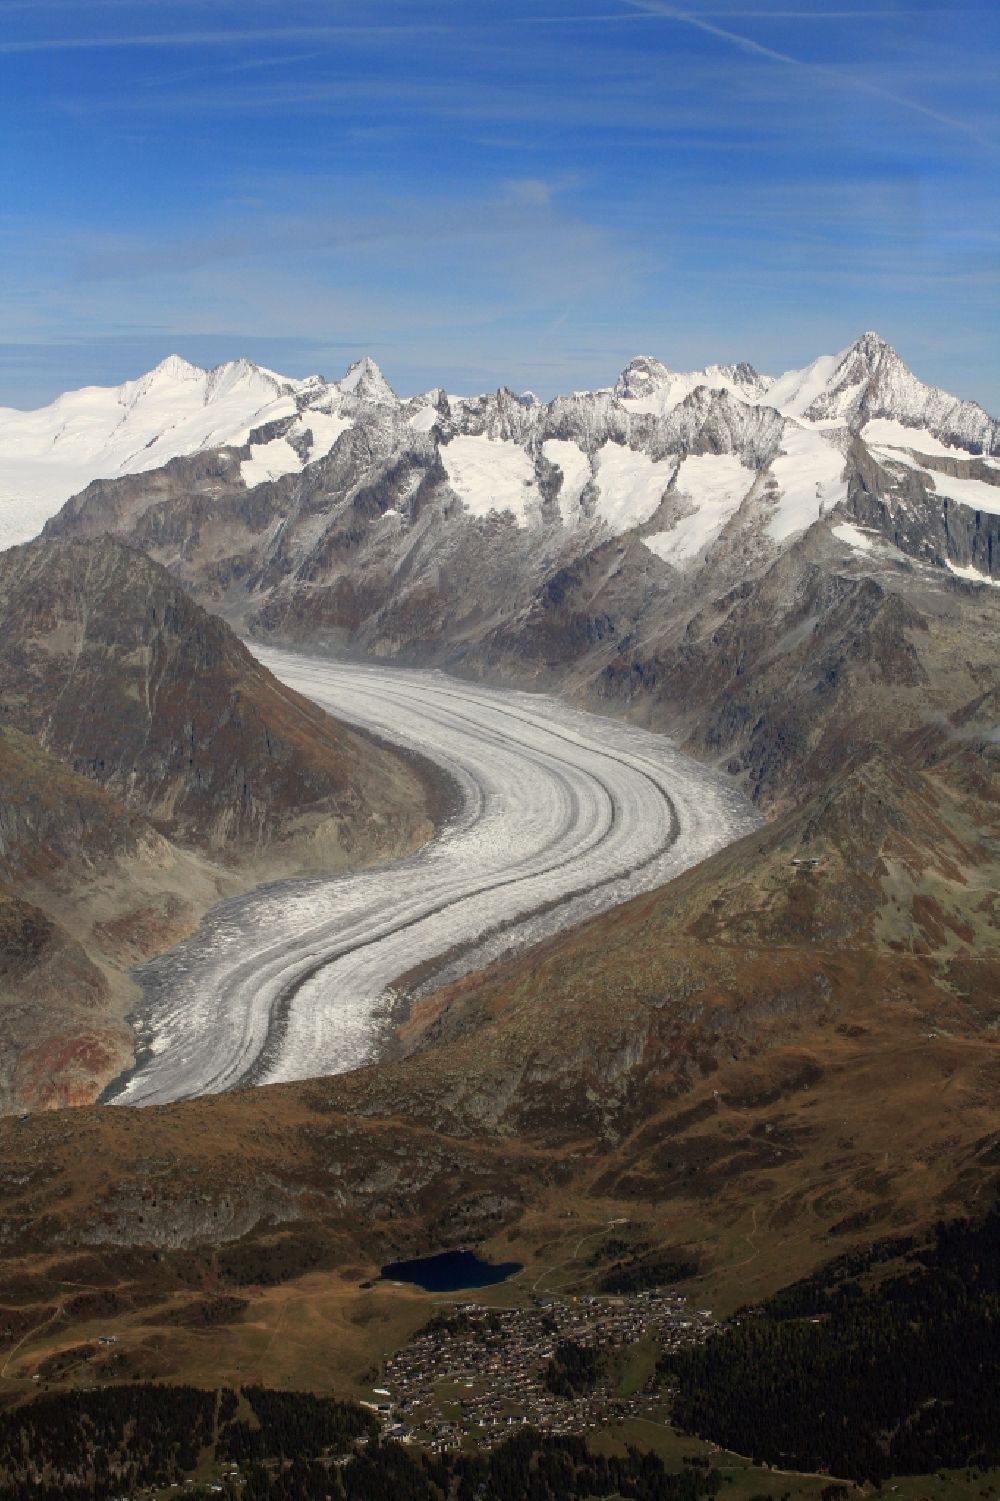 Luftaufnahme Bettmeralp - Gletscher des Grossen Aletschgletscher in der Felsen- und Berglandschaft bei der Bettmeralp im Kanton Wallis, Schweiz